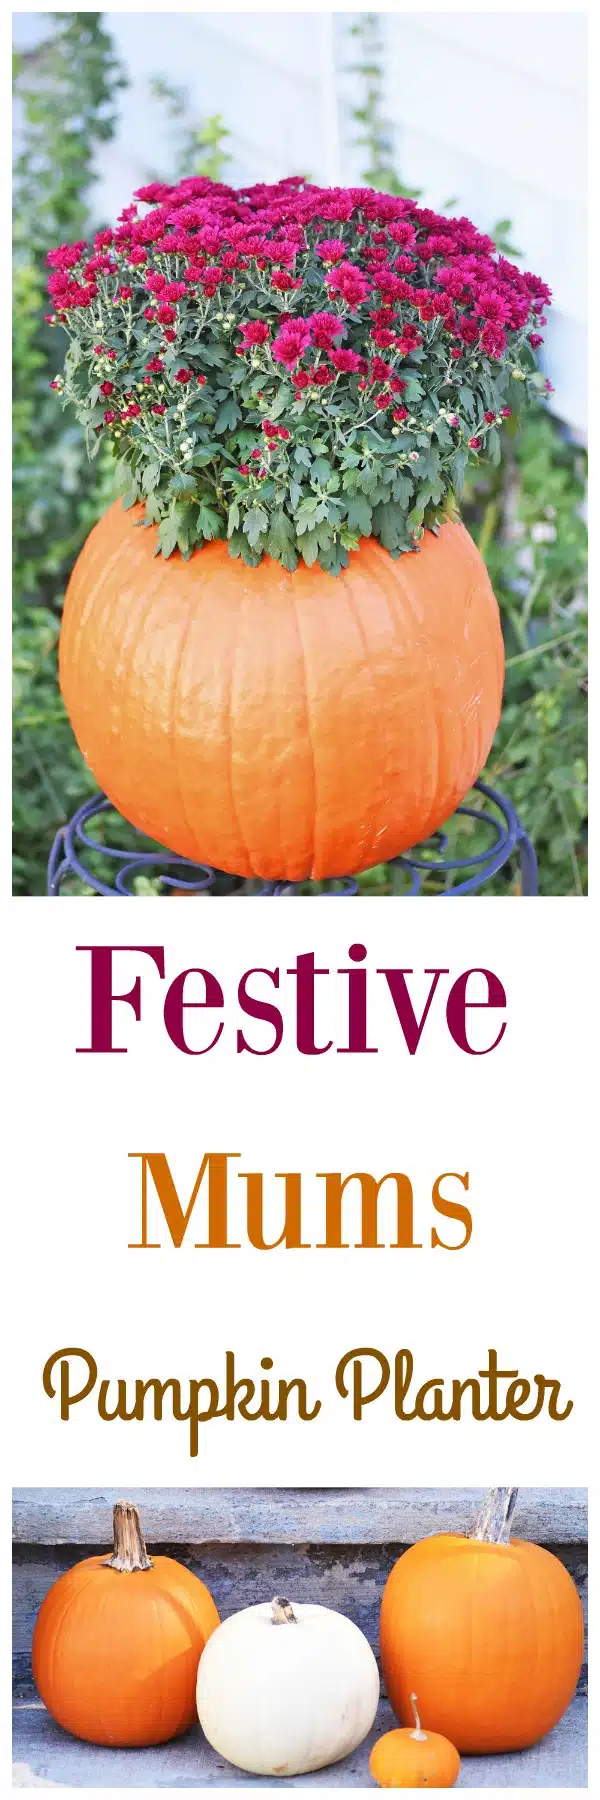 Festive-mums-pumpkin-planter